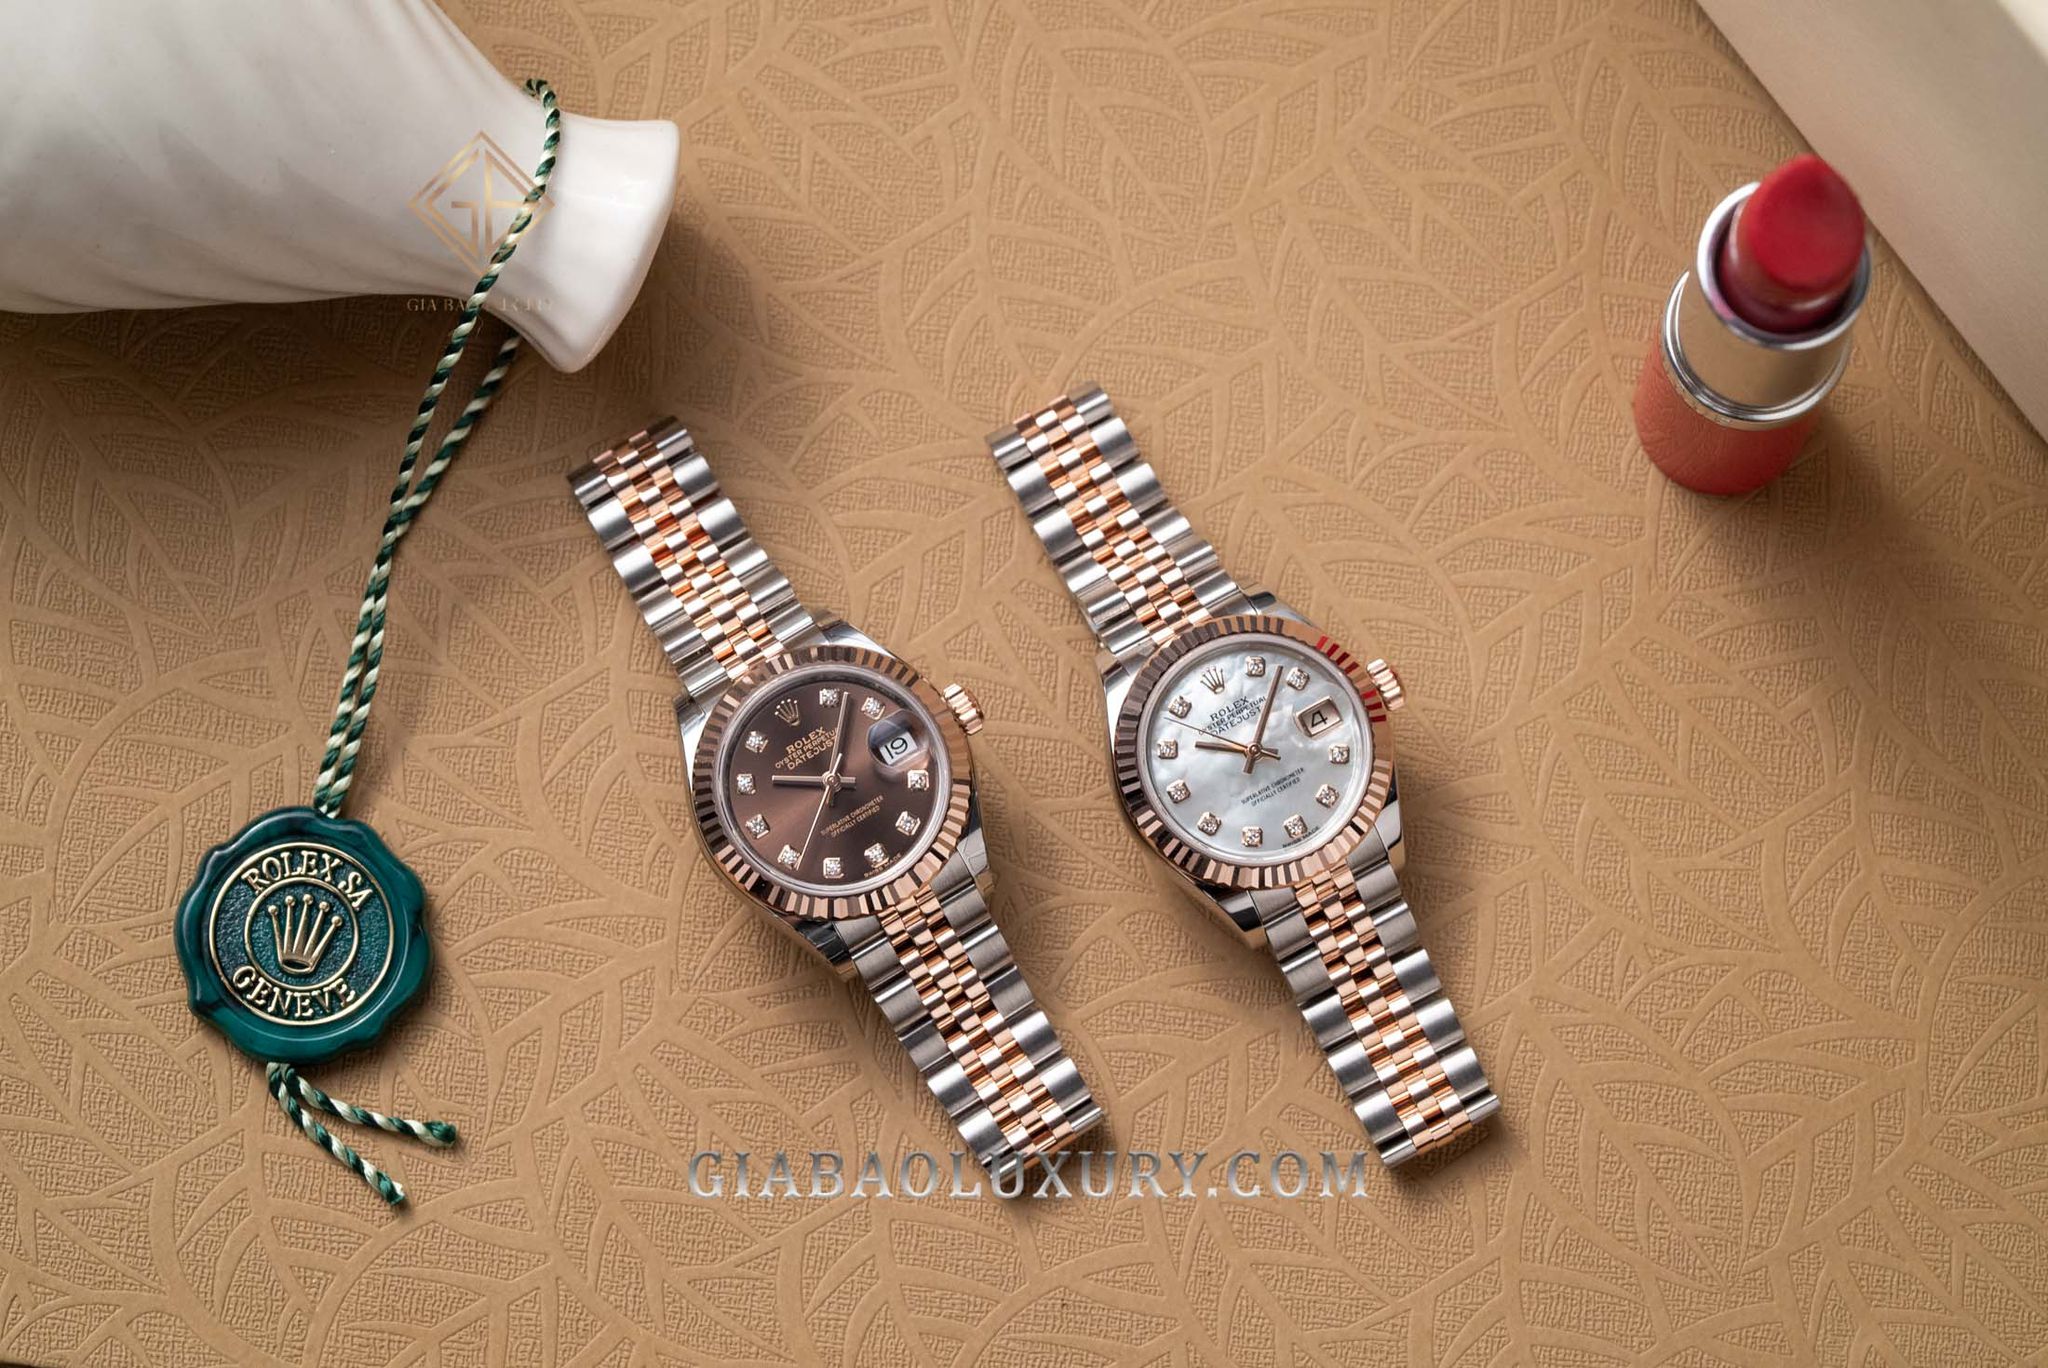 Gia Bảo Luxury thu mua đồng hồ Rolex Lady-Datejust chính hãng